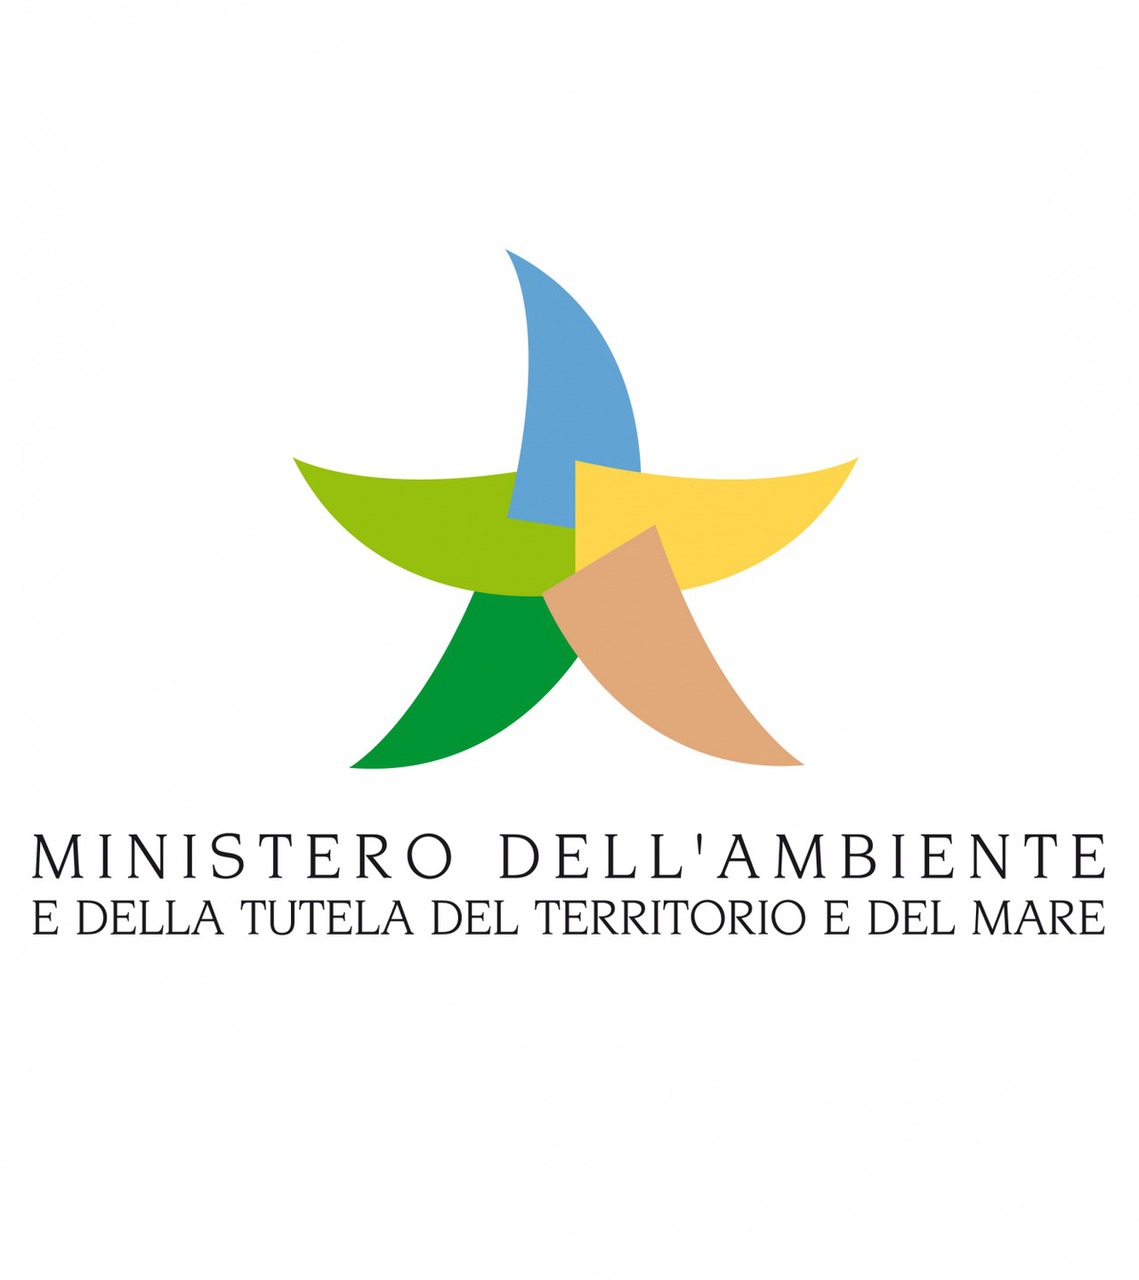 End of waste, ministro Costa firma decreto pneumatici fuoriuso: